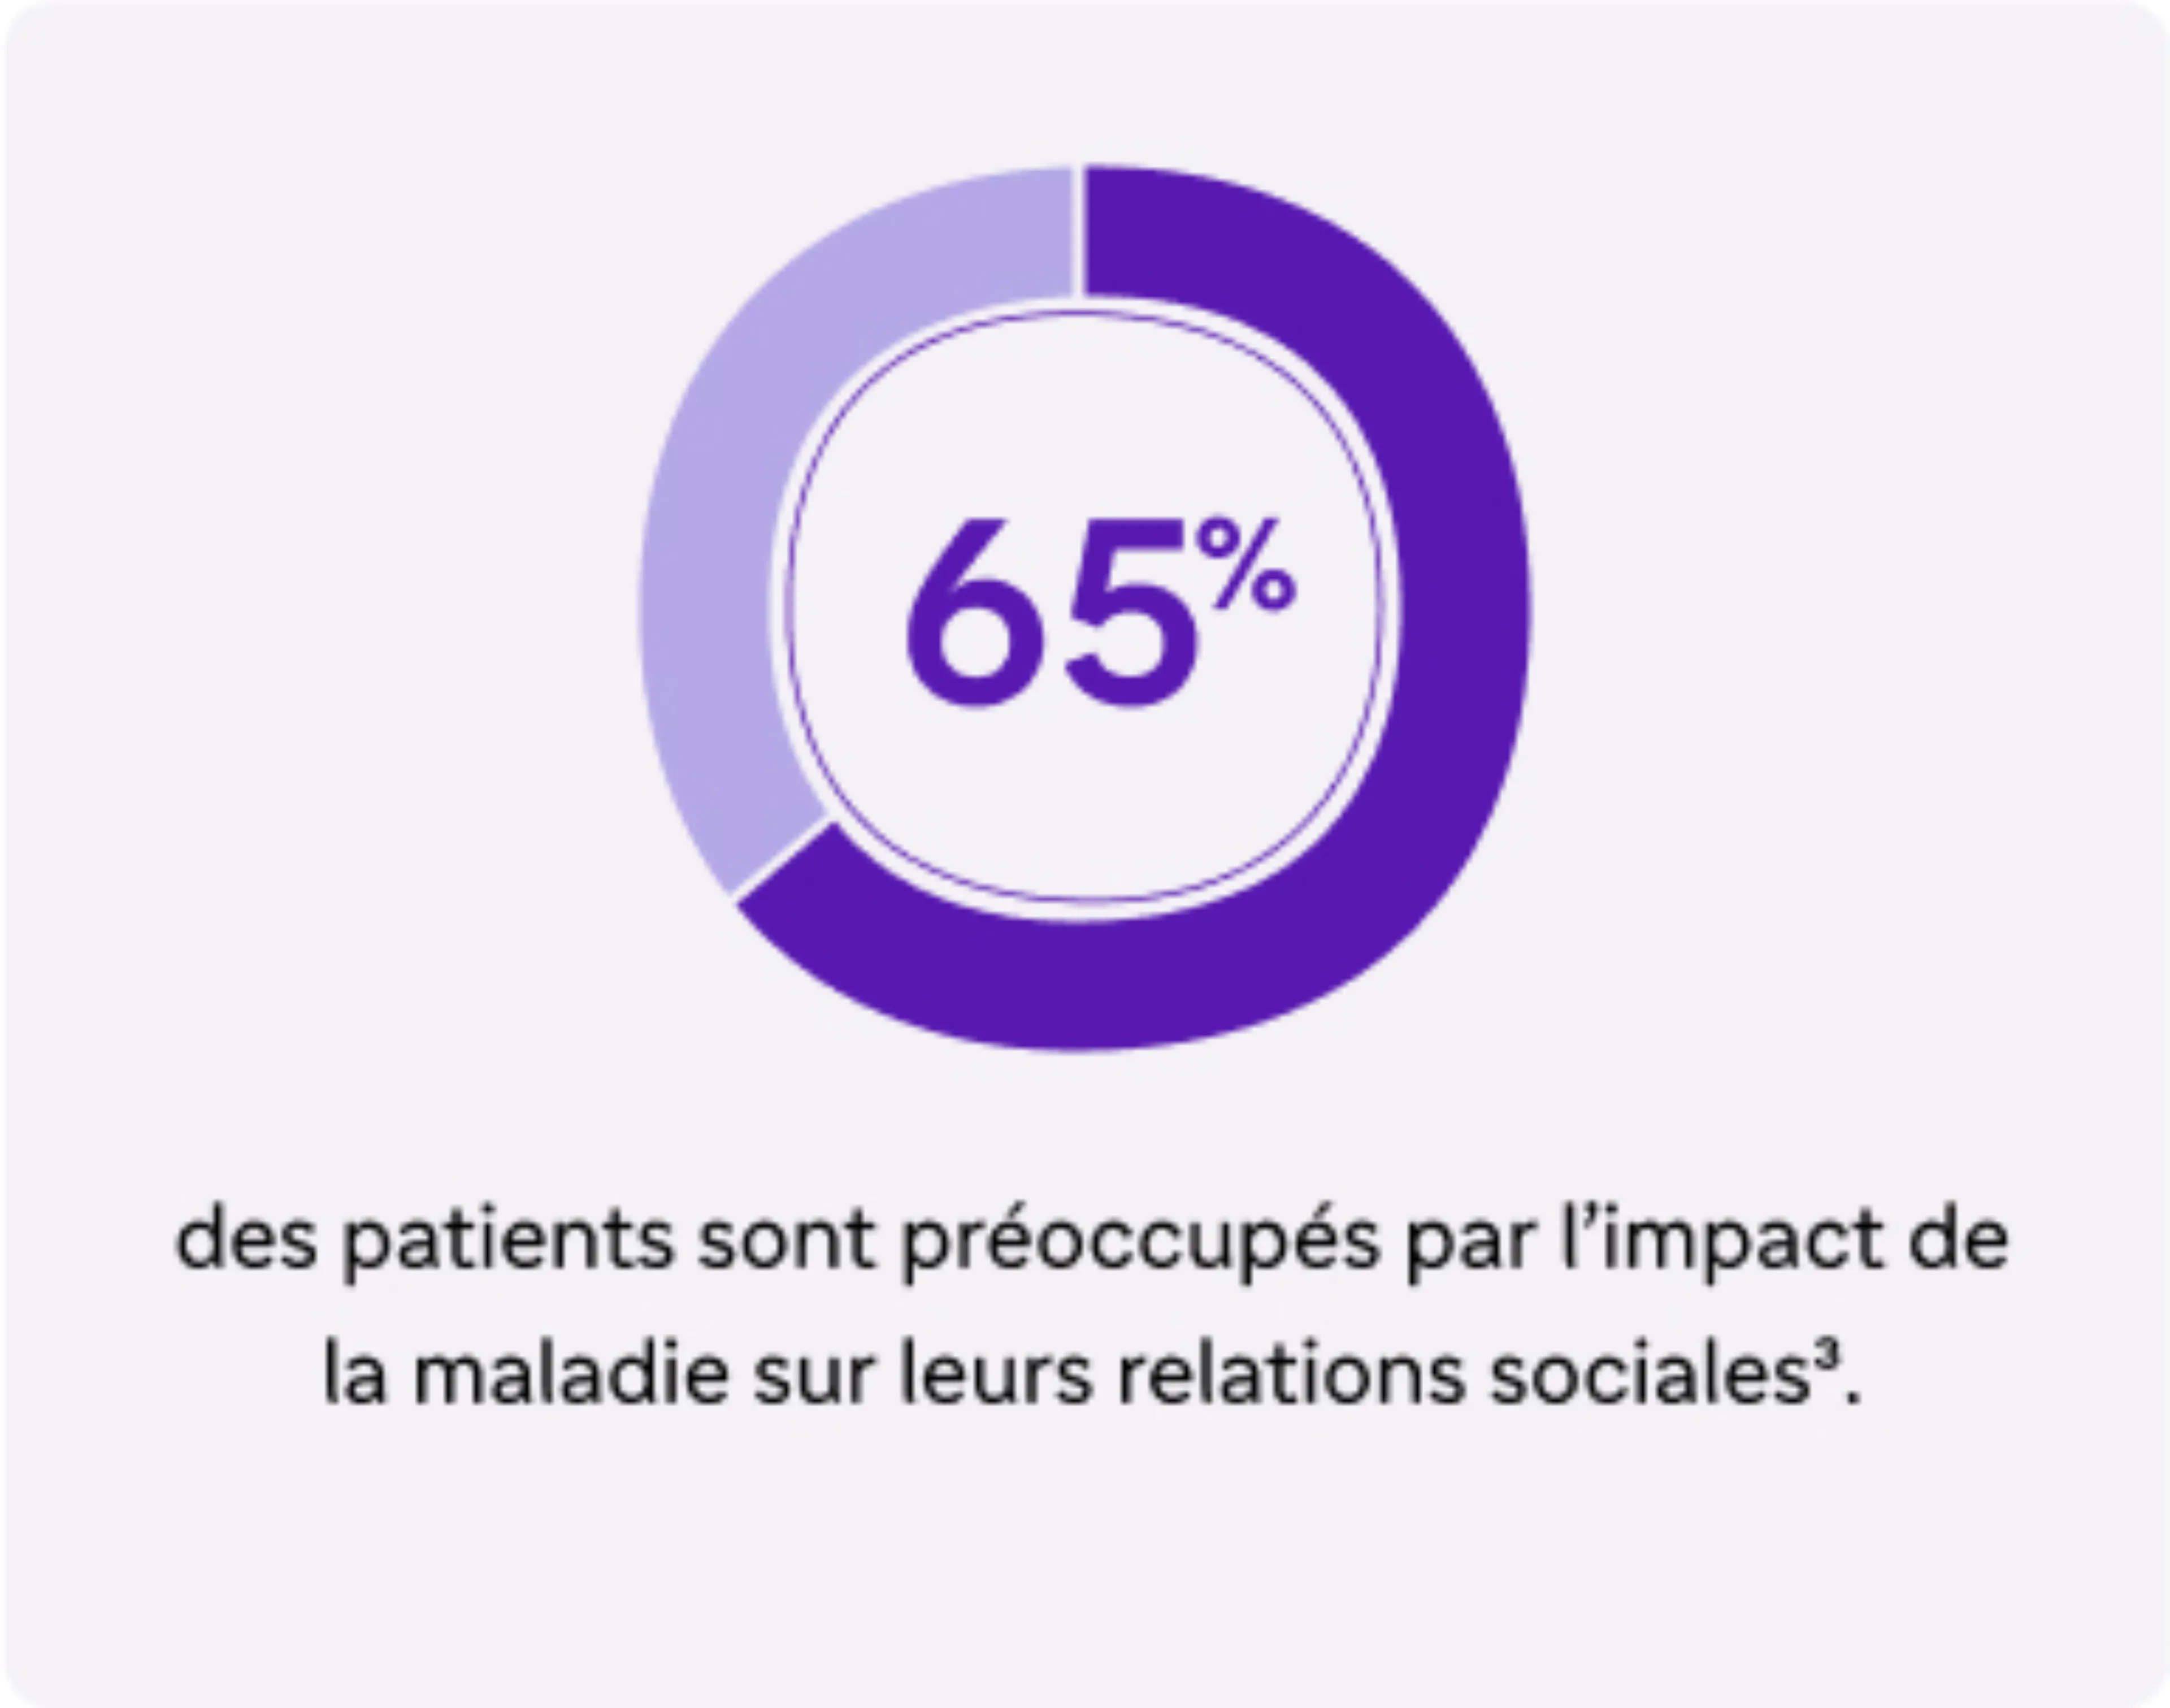 Carte 2 "65% des patients sont préoccupés par l'impact de la maladie leurs relations sociales"